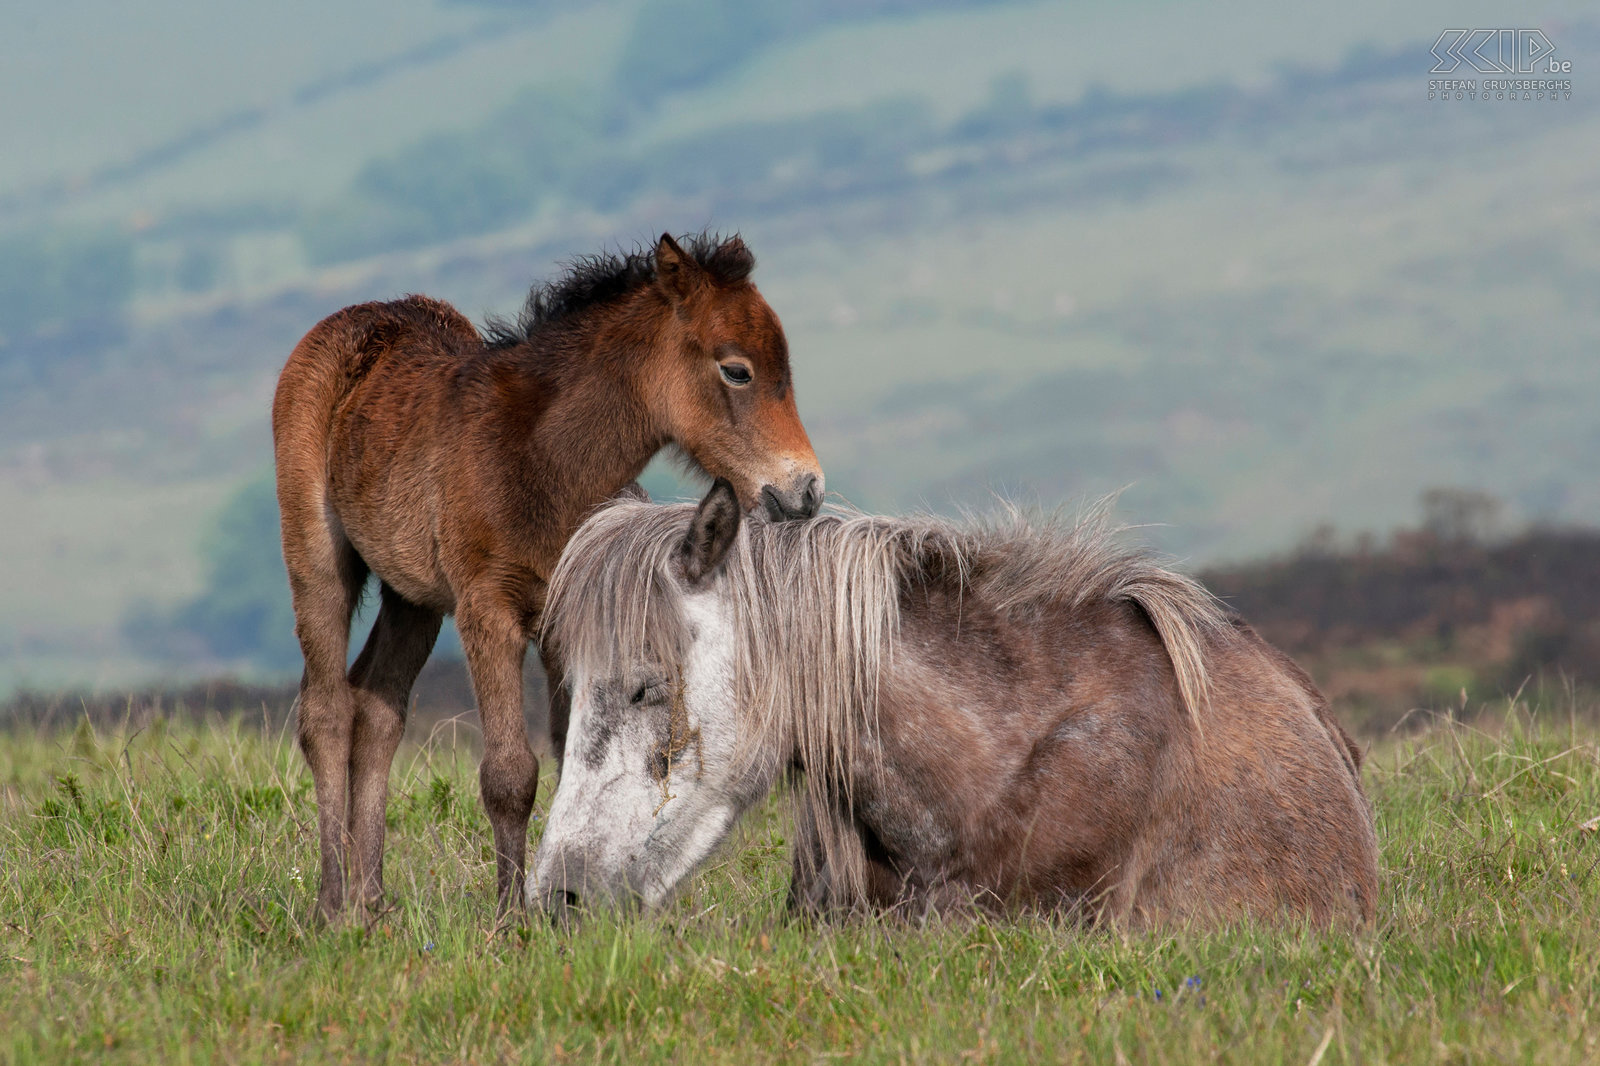 Dartmoor - Ponies Half-wild ponies in Dartmoor NP. Stefan Cruysberghs